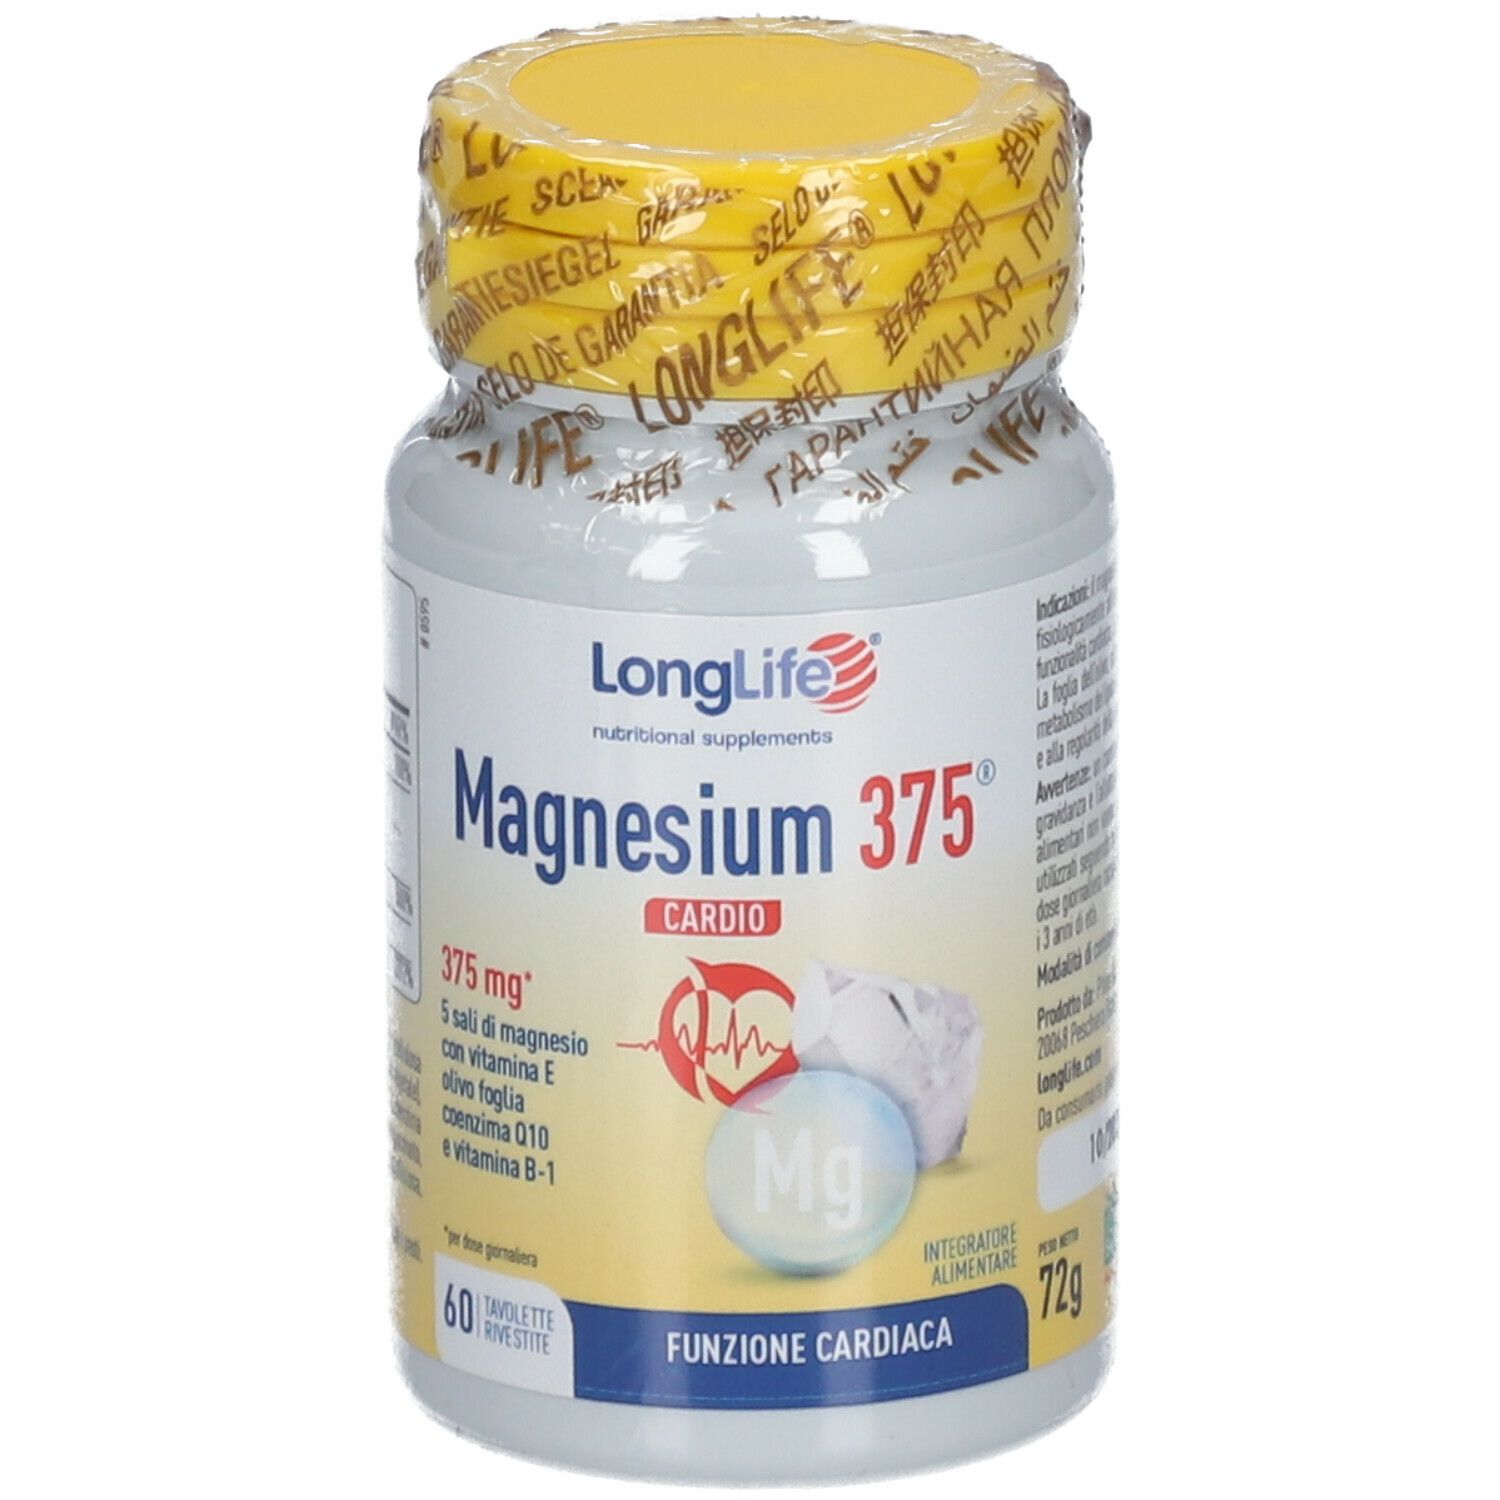 LongLife® Magnesium 375® Cardio